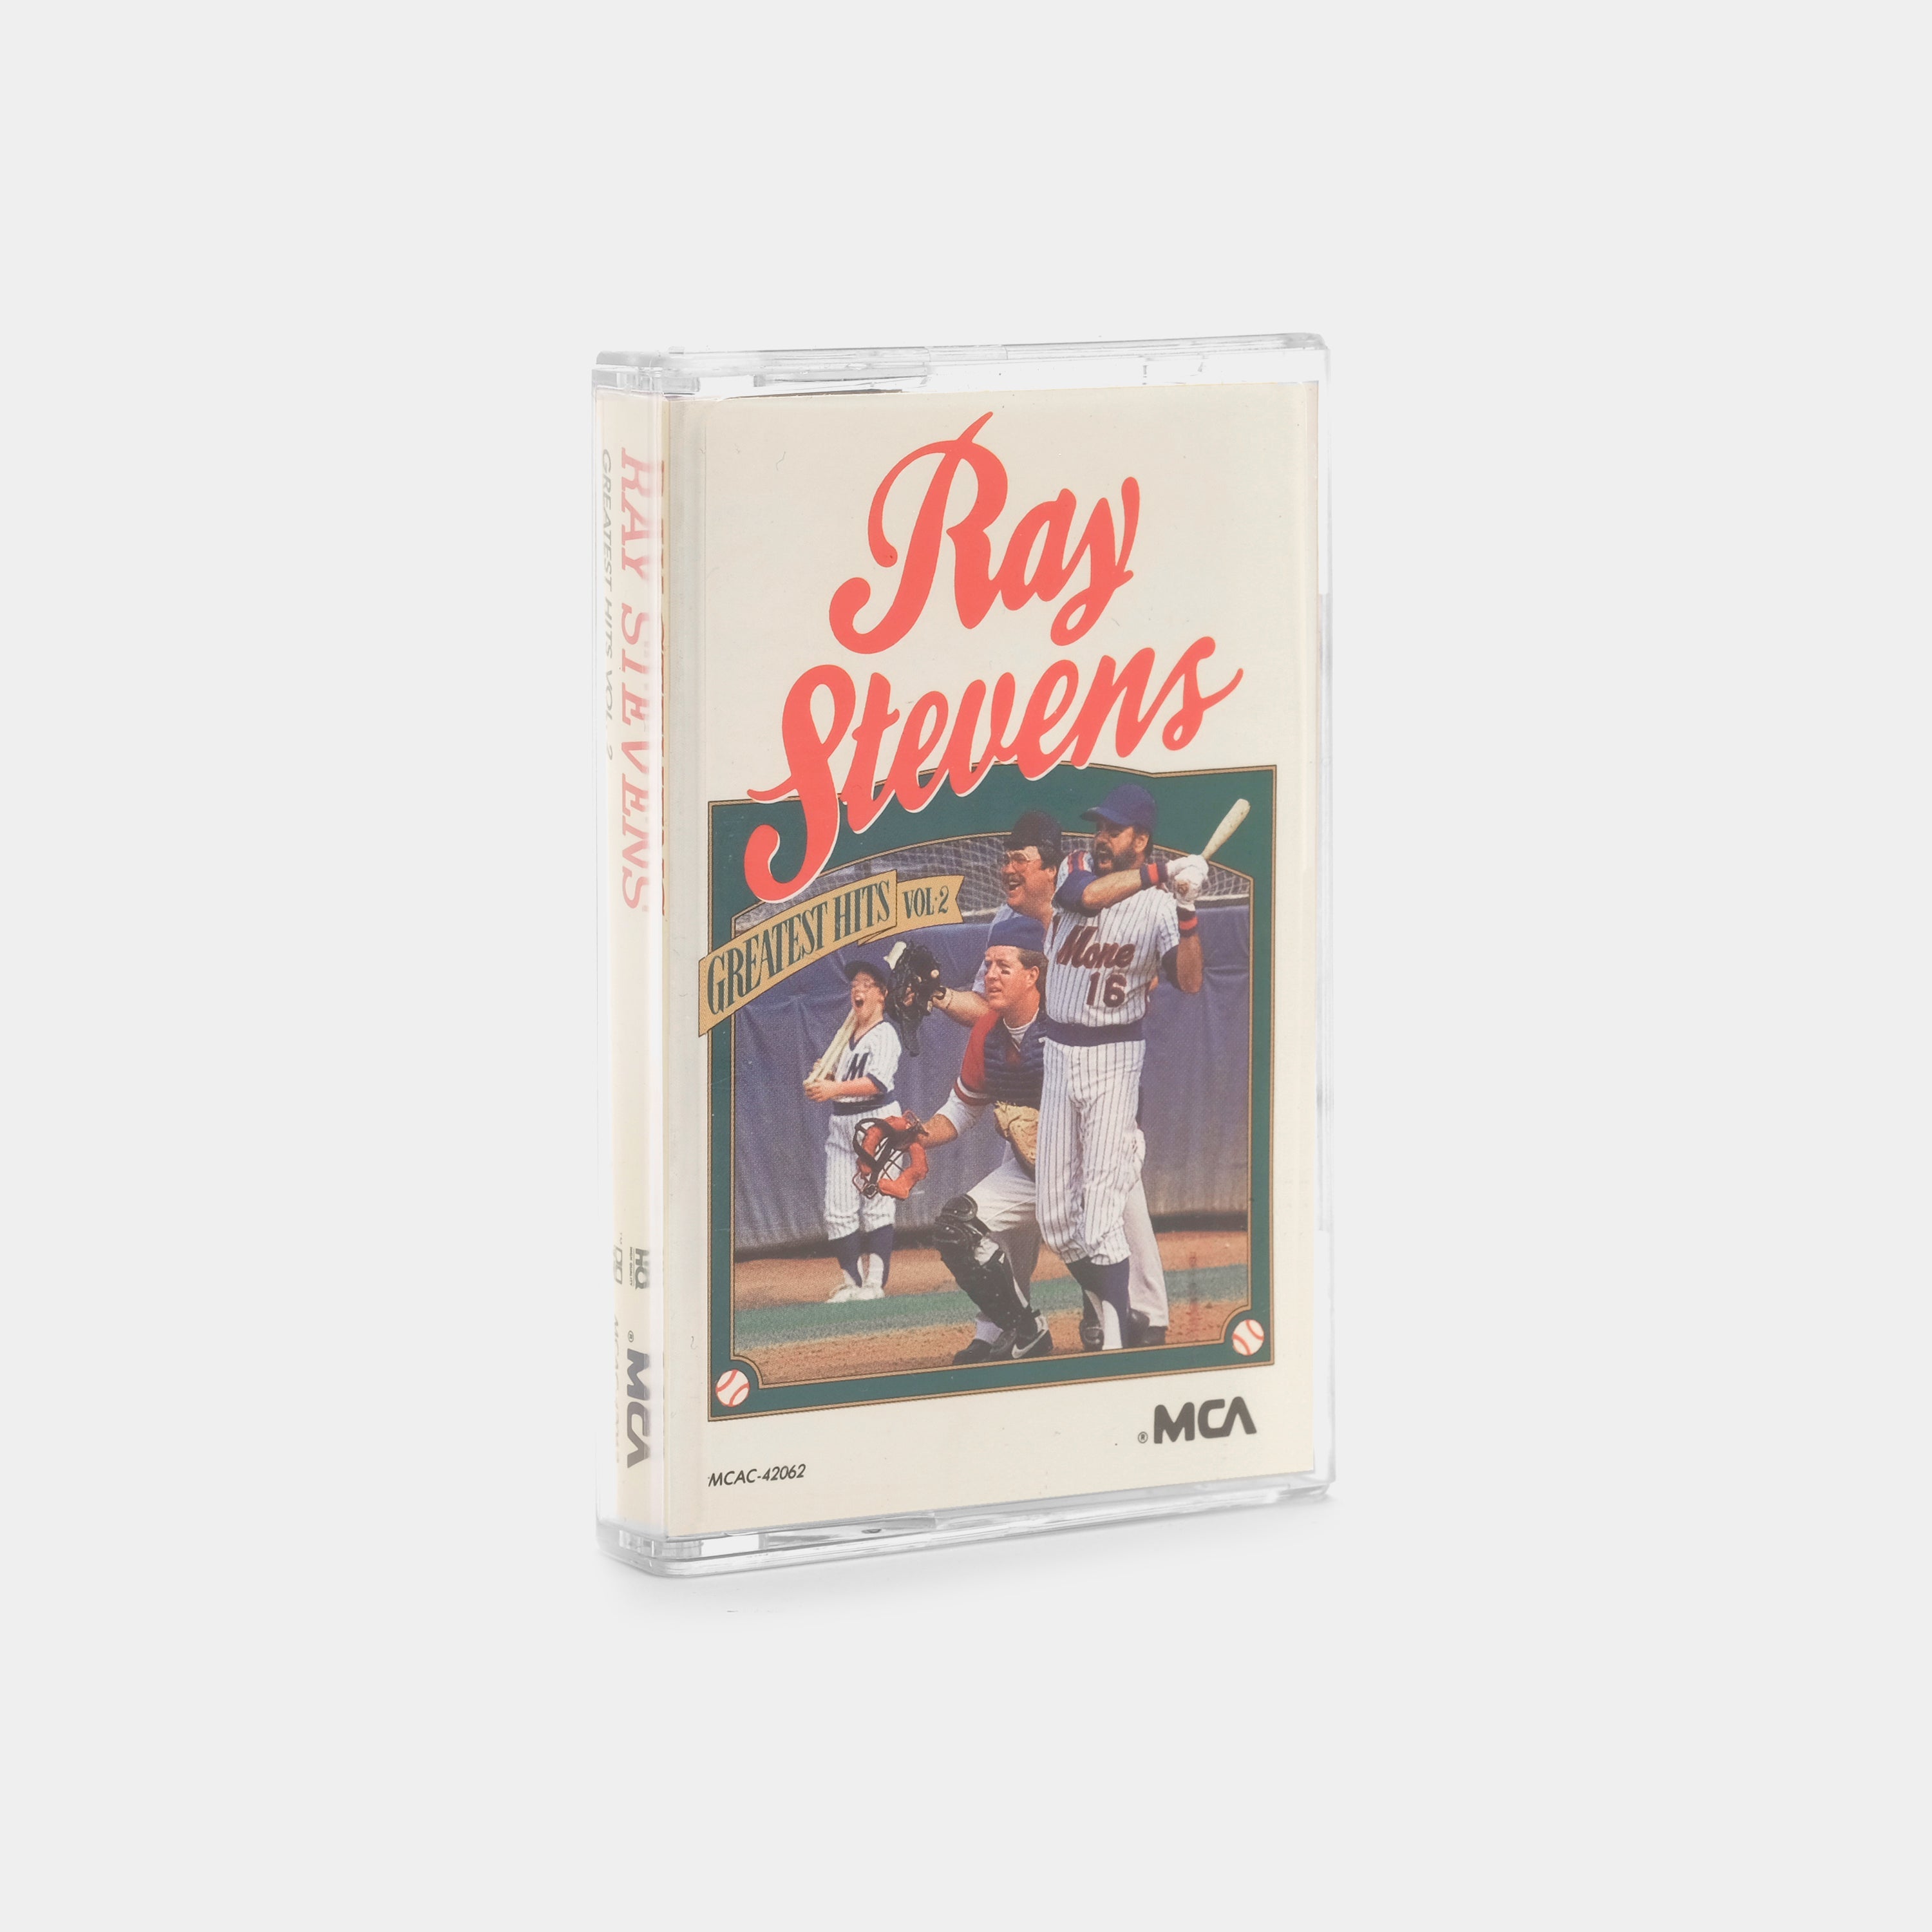 Ray Stevens - Greatest Hits Vol. 2 Cassette Tape